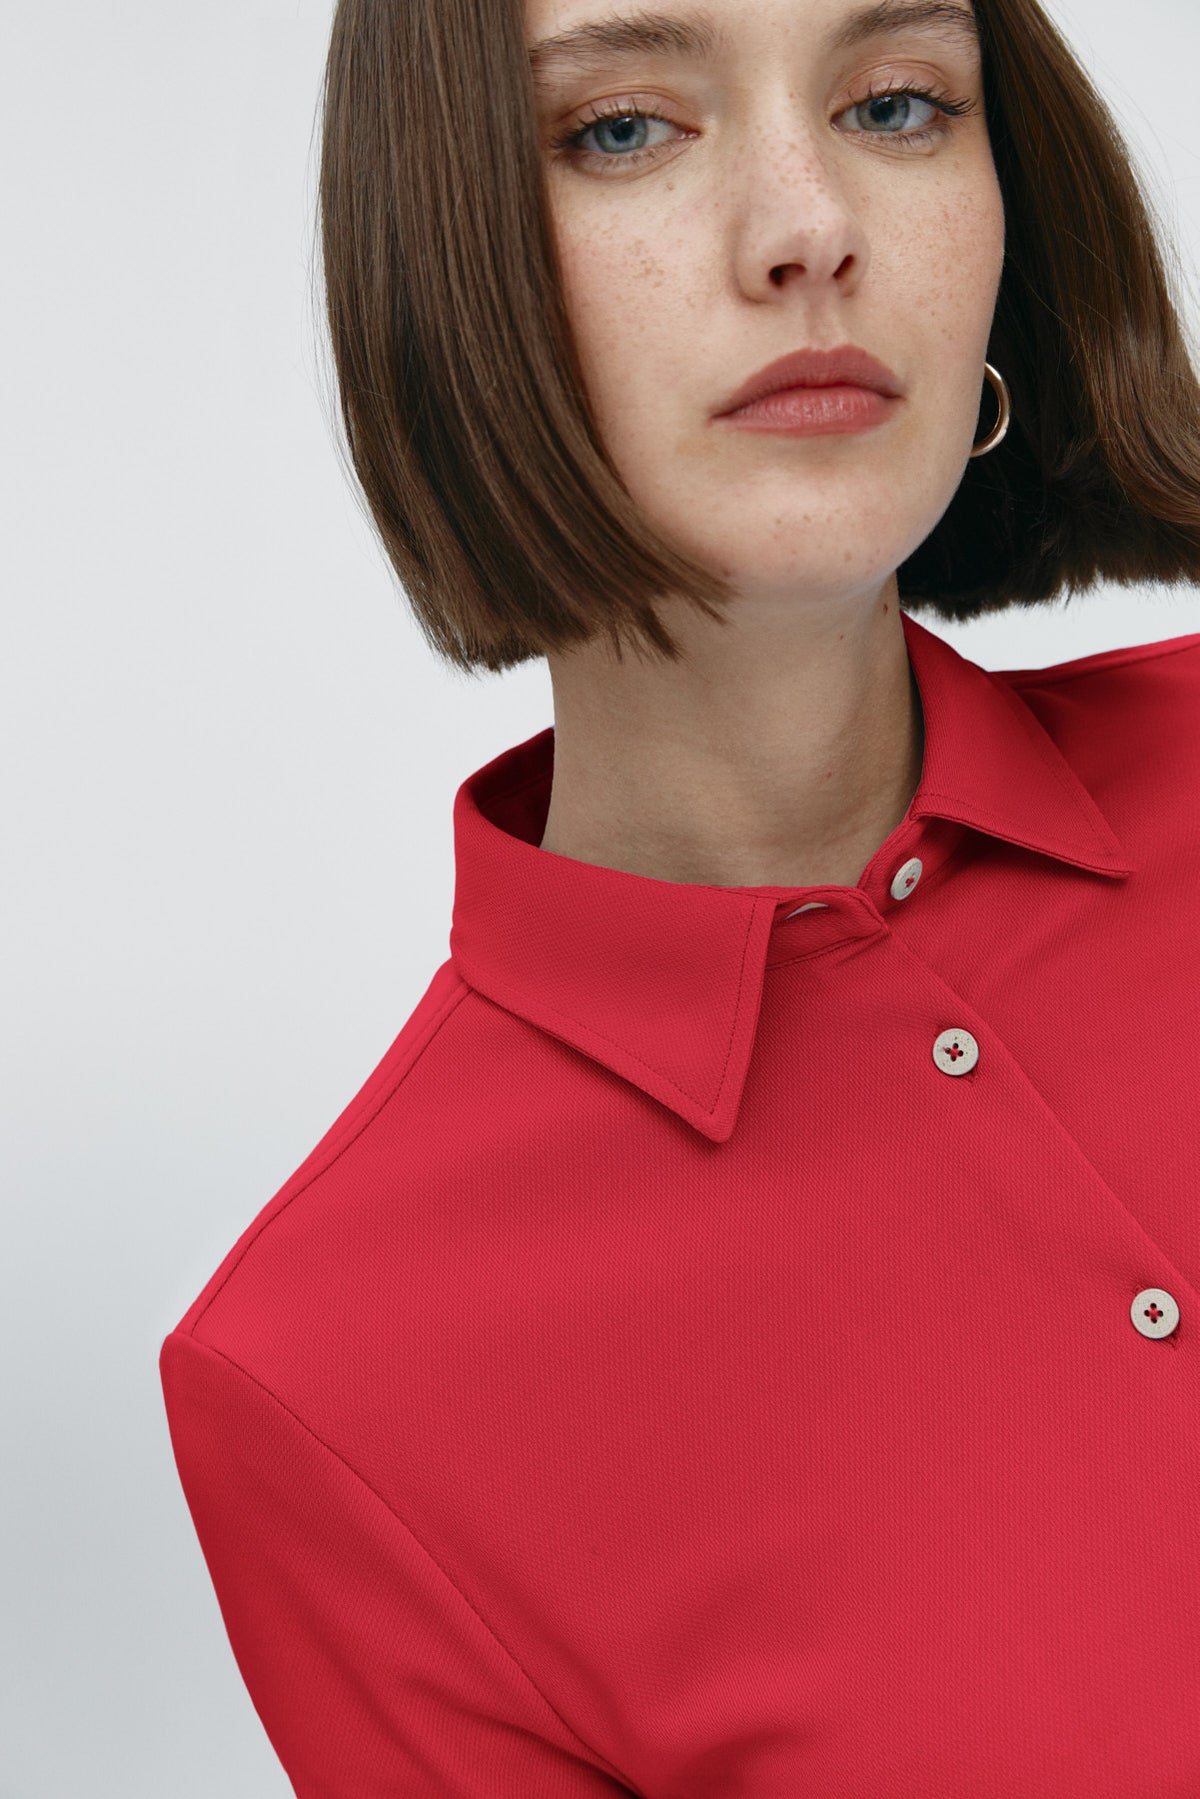 Camisa rojo atlanta oversize de Sepiia, elegante y resistente a manchas y arrugas. Foto retrato